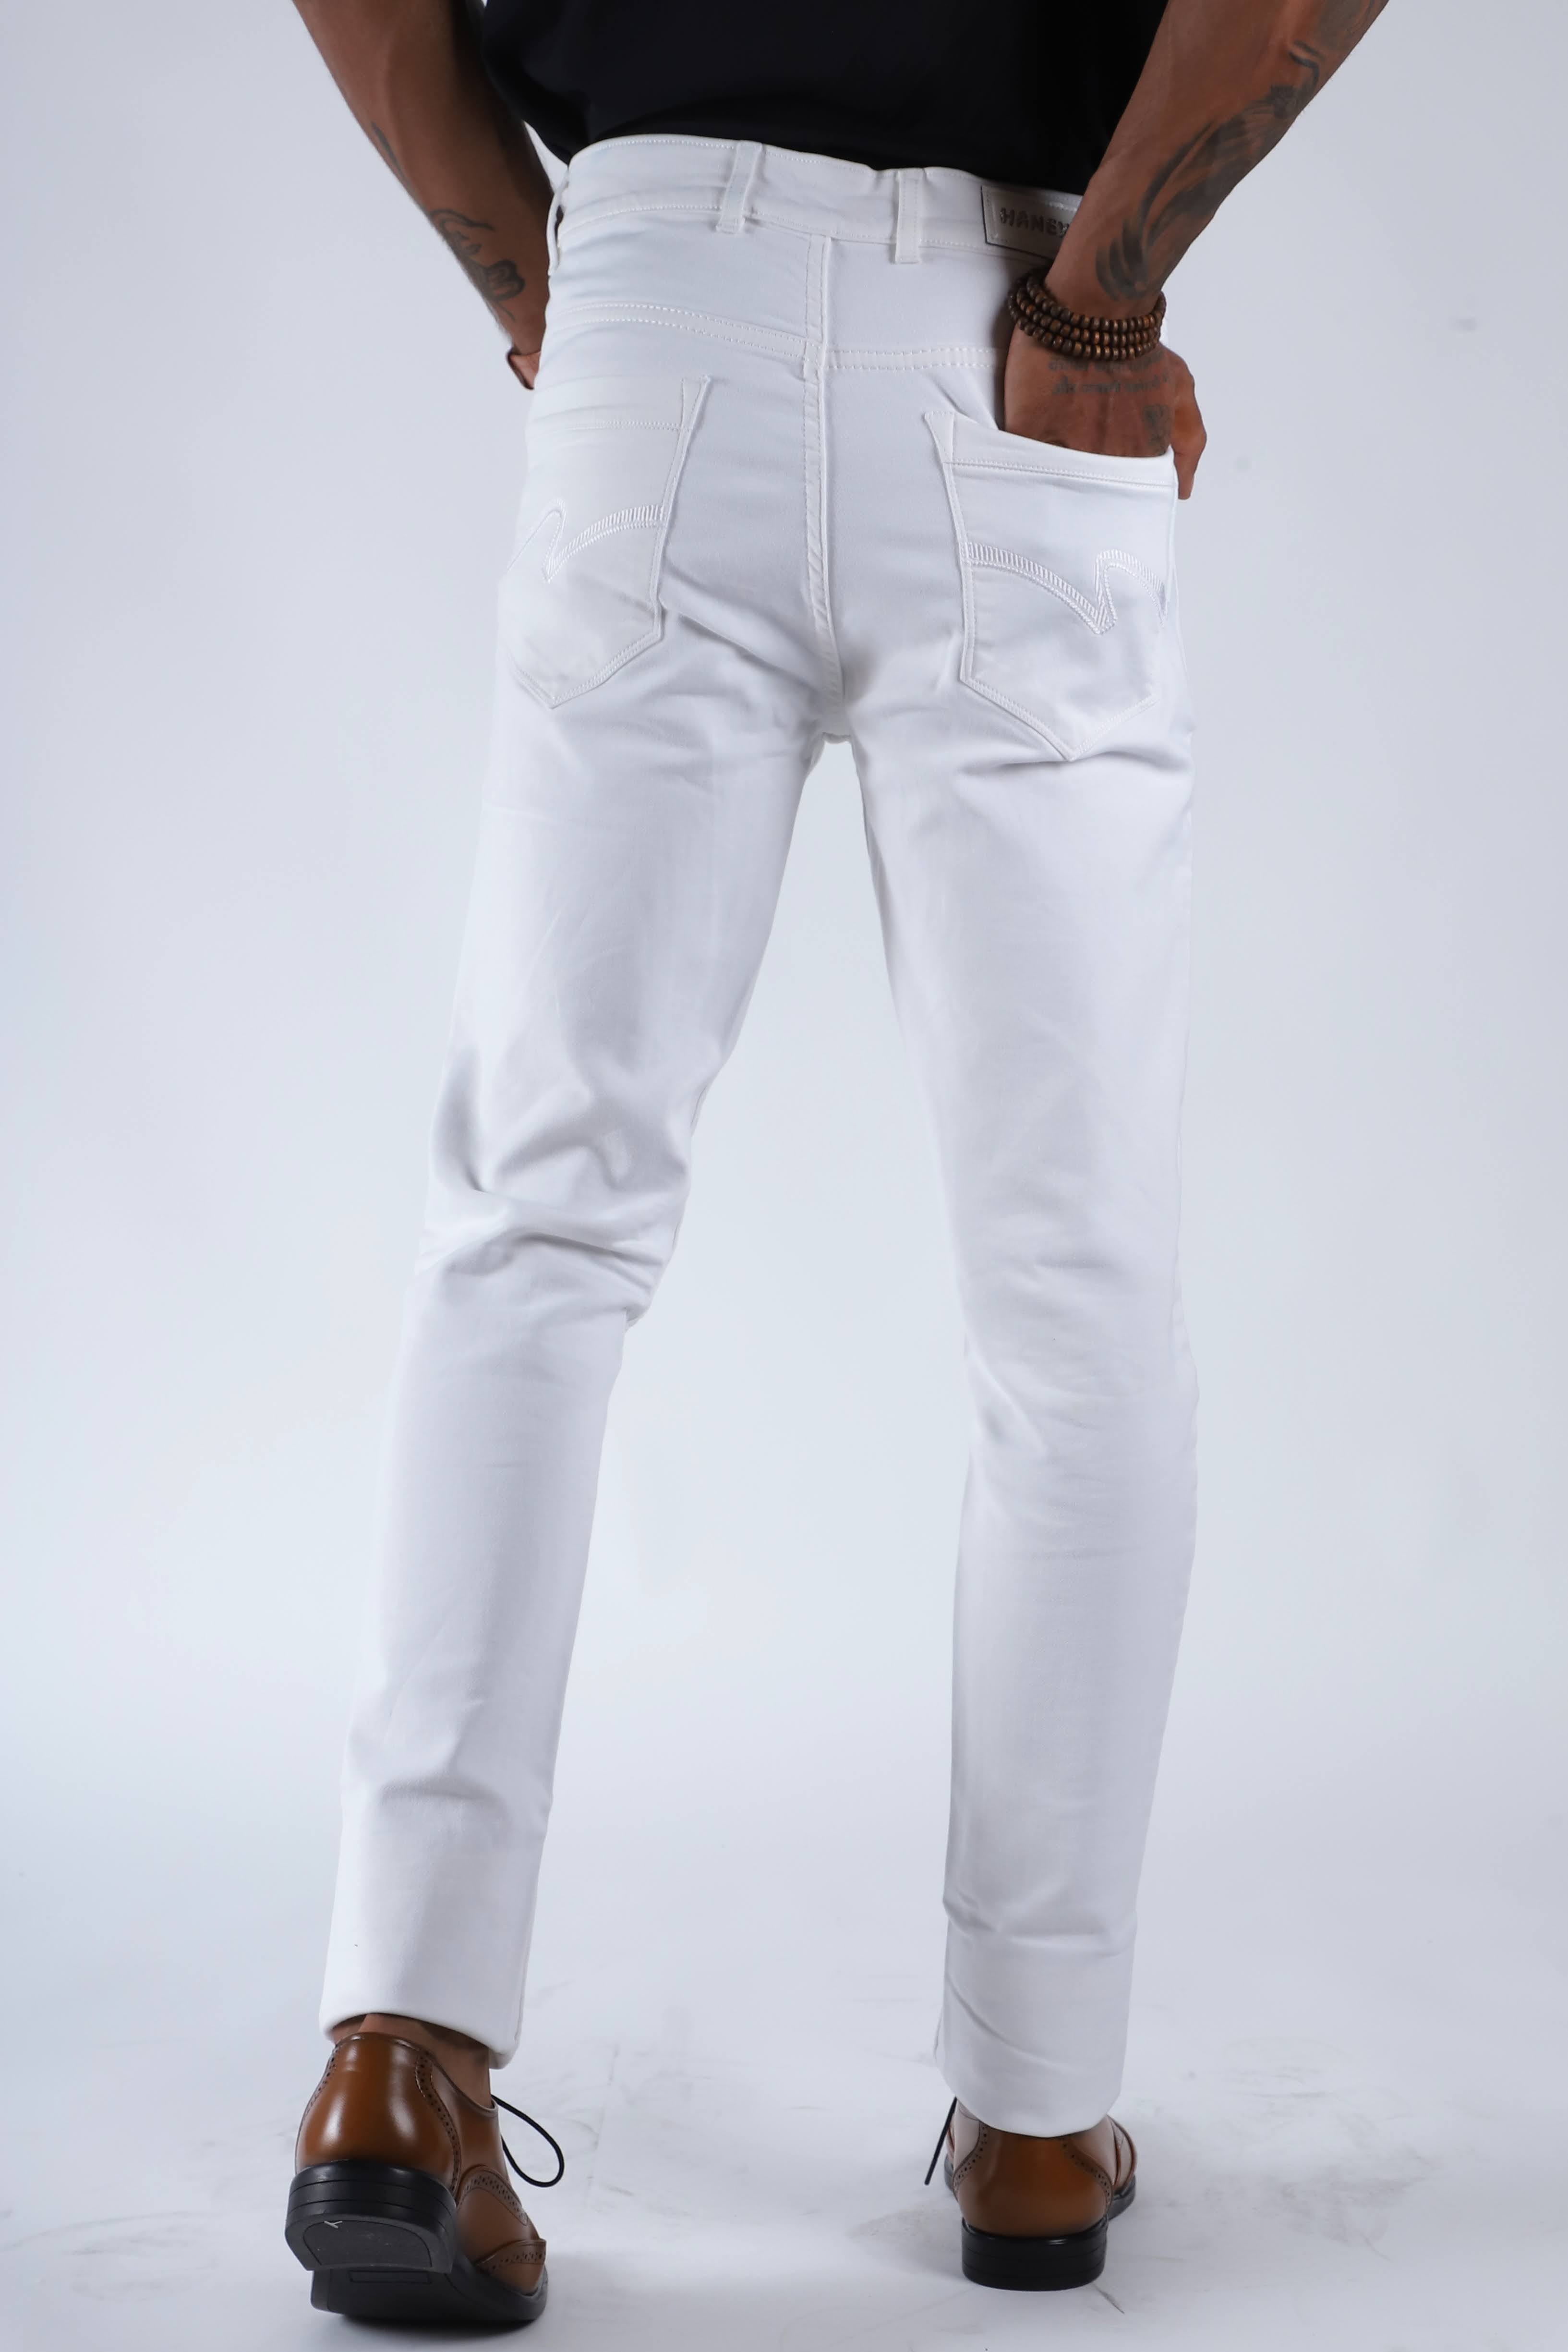 Hanex Super White Denim Jeans